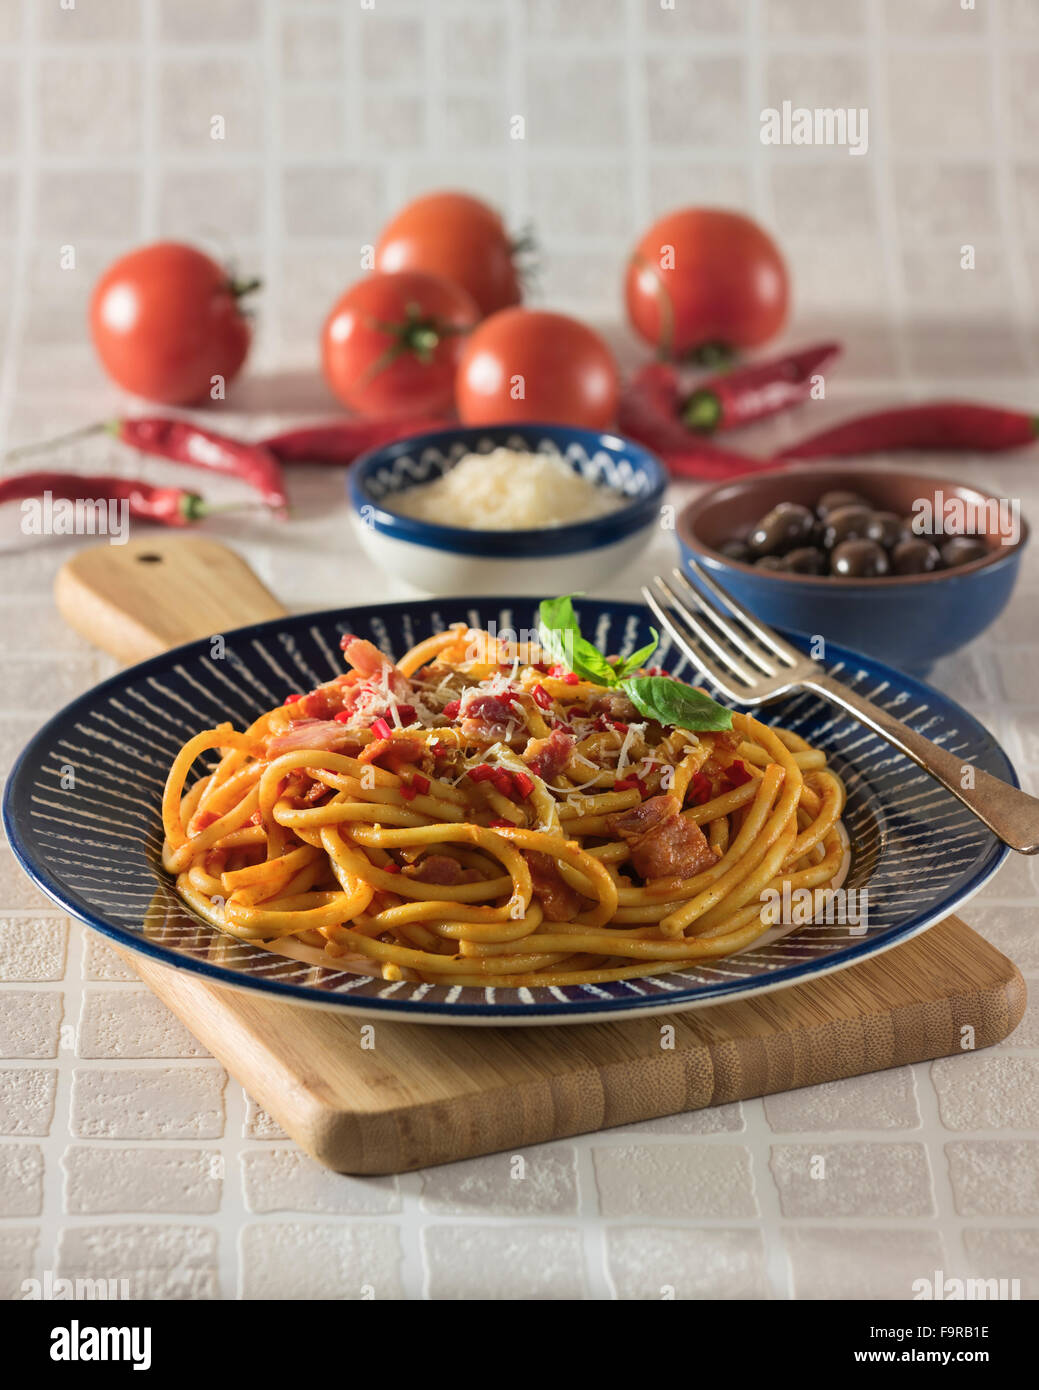 Bucatini all'amatriciana.Pasta with bacon and tomato sauce. Italian food. Stock Photo